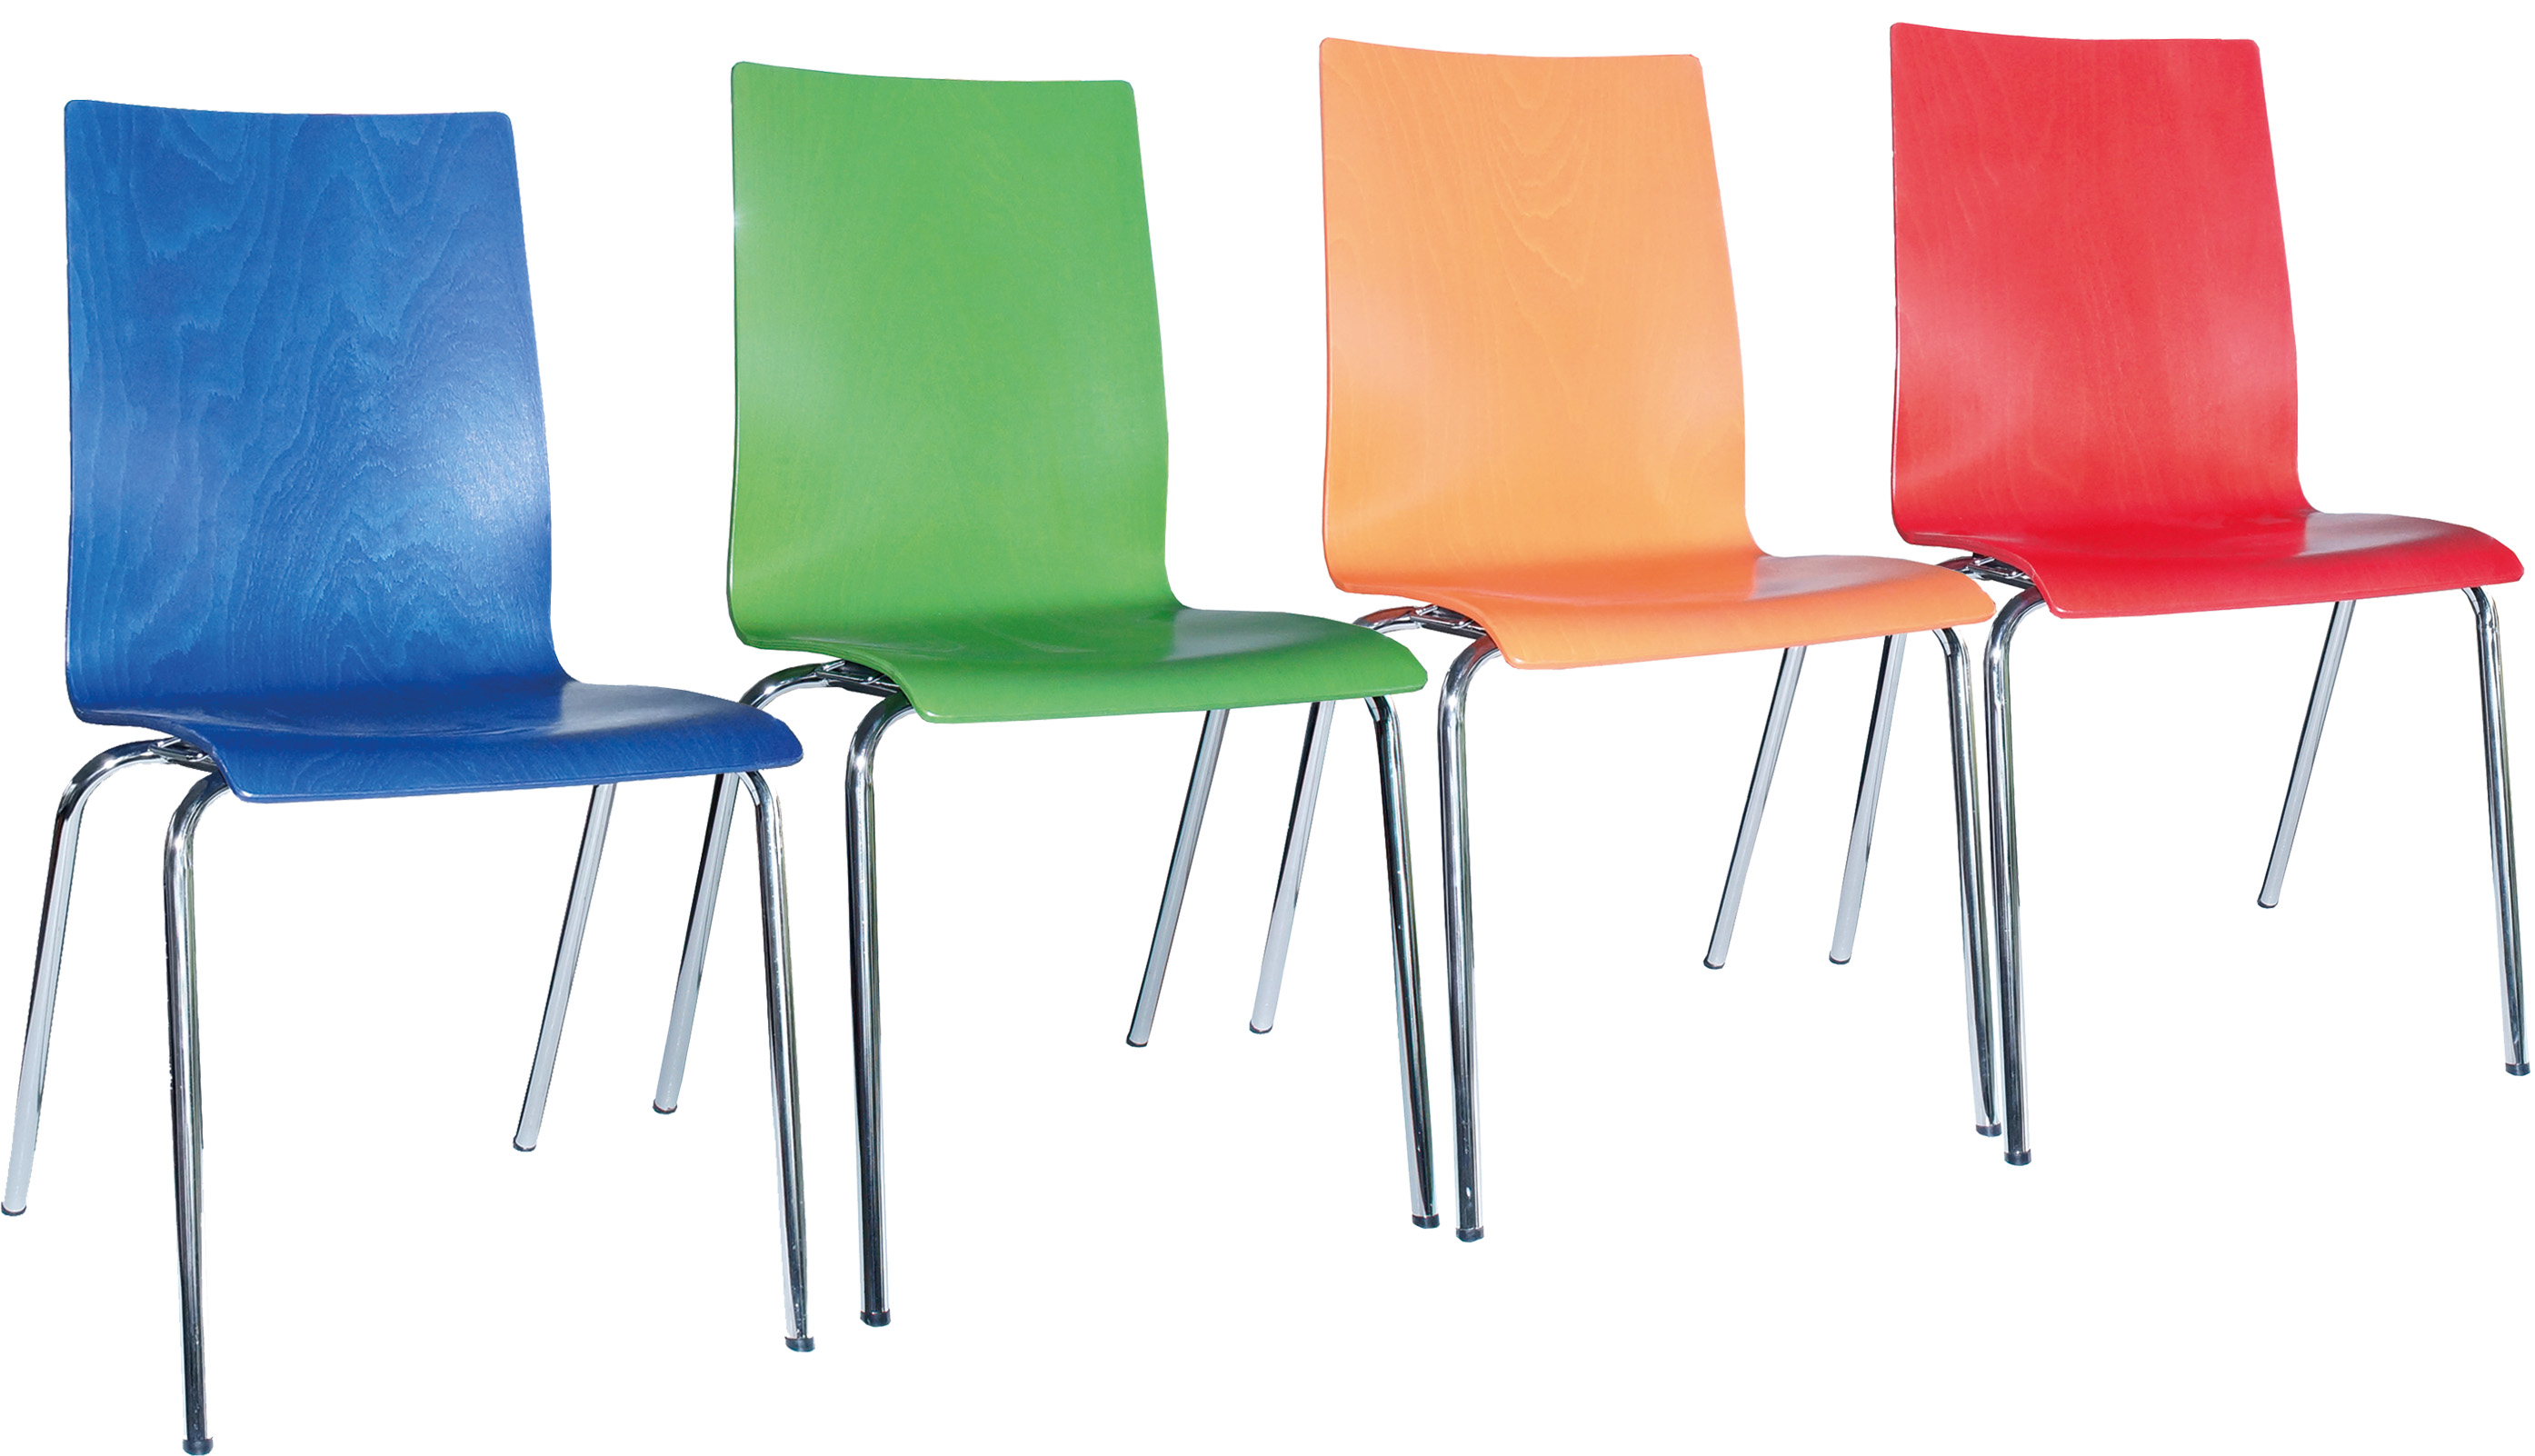 Farbige Stühle: blau, grün, gelb, rot - MEGA-reduziert (Stapelstühle, kombinierbar, in Reihen verbindbar)